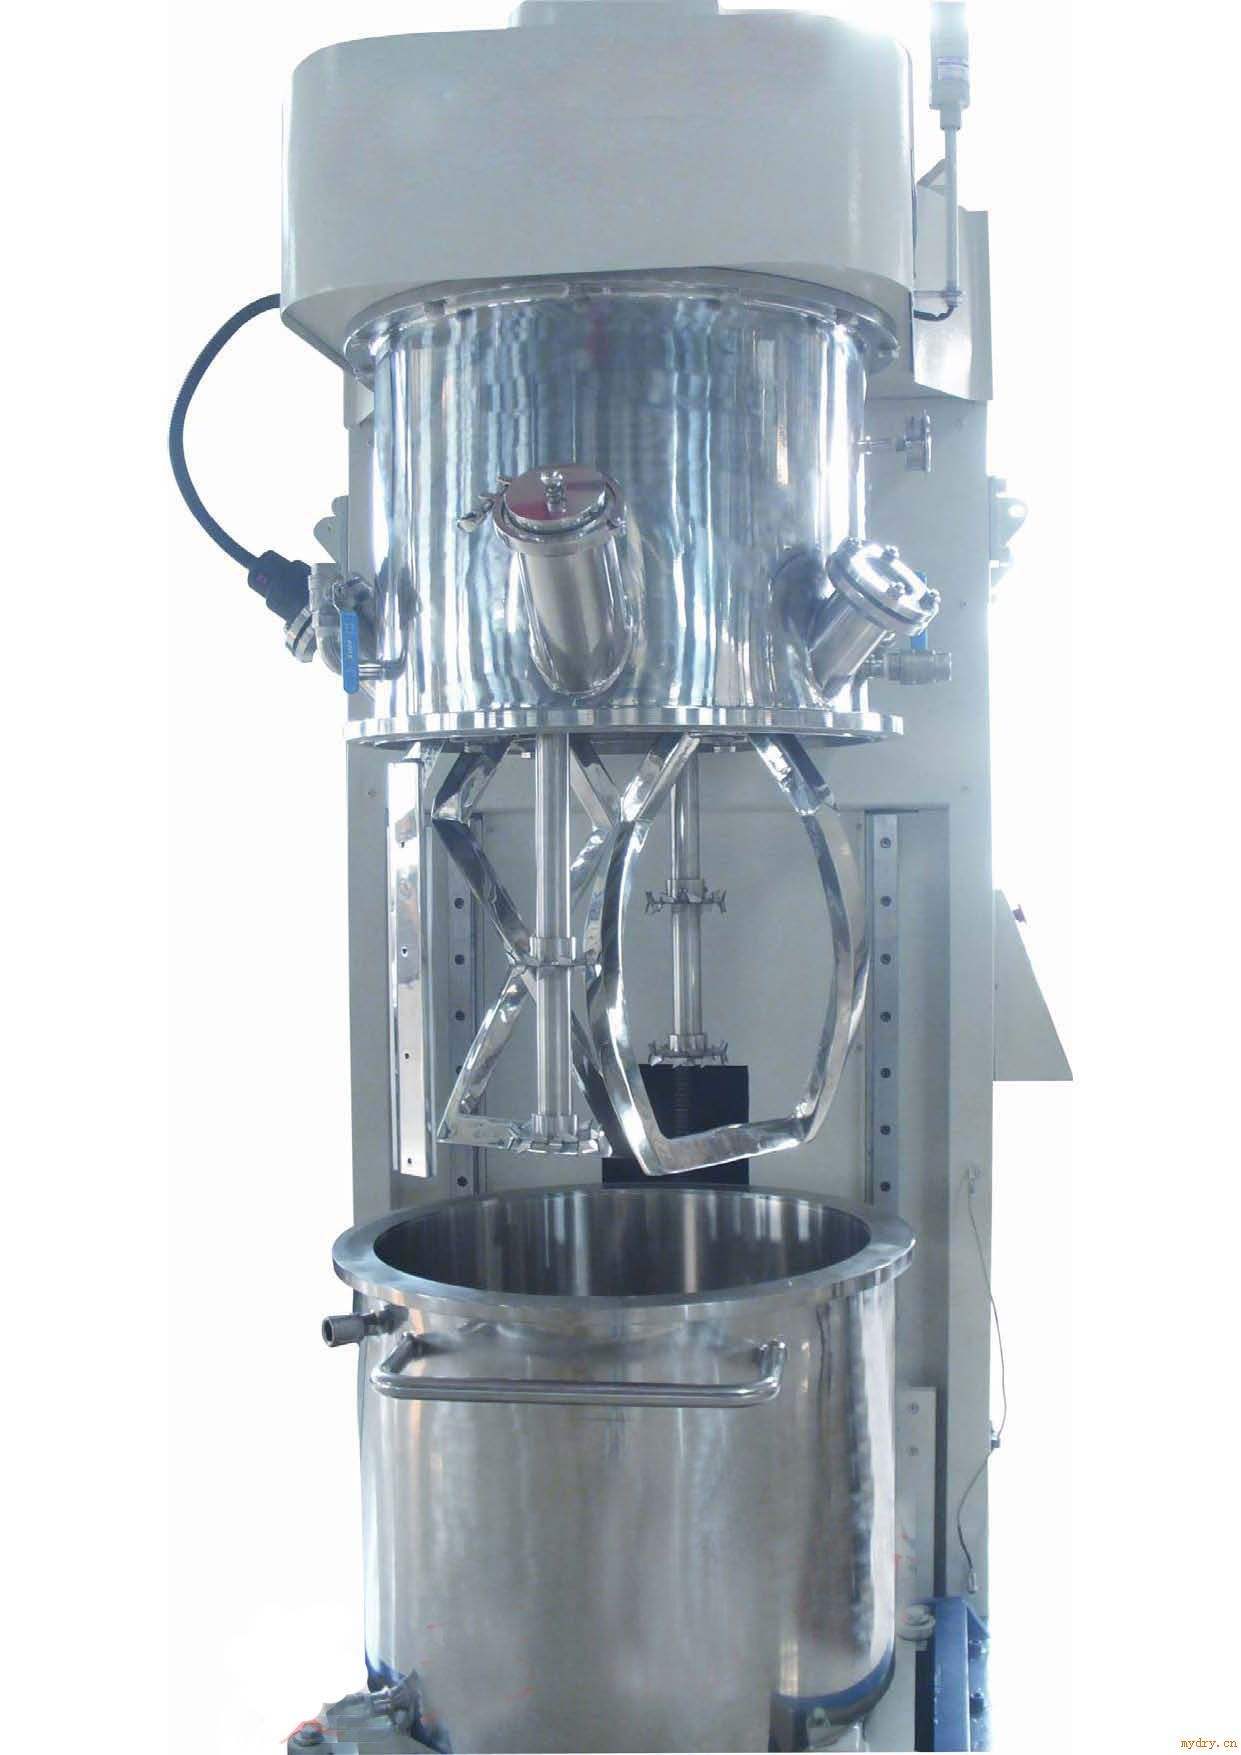 加热搅拌机、江苏无锡加热搅拌机生产厂家直销、加热搅拌机供应商批发价格